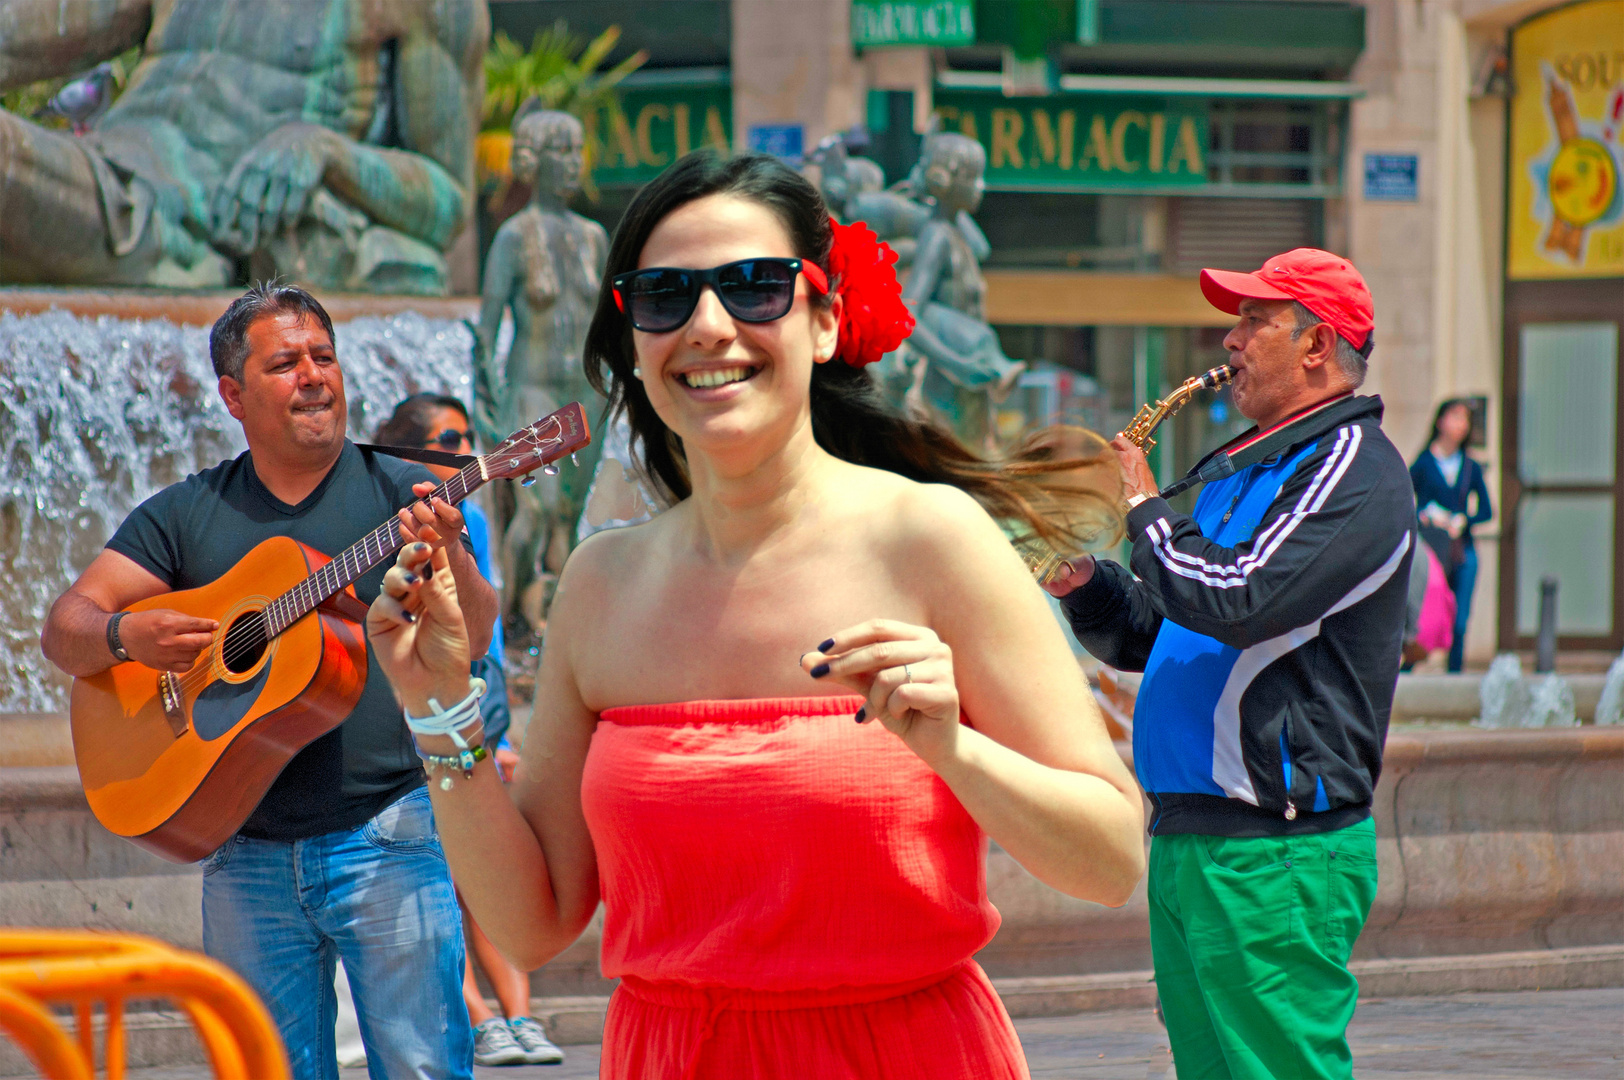 Fröhliche Stimmung auf dem Rathausplatz von Valencia